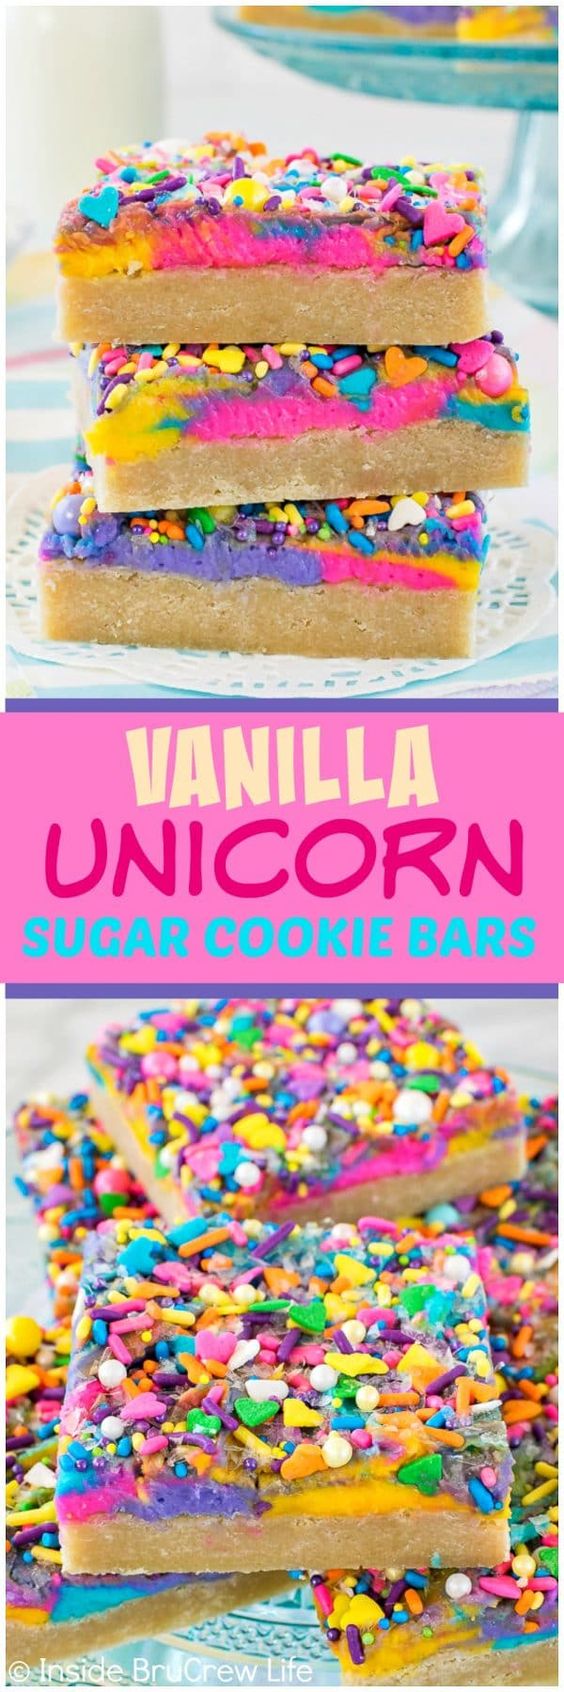 Unicorn desserts for a unicorn party: Vanilla Unicorn Sugar Cookie Bars